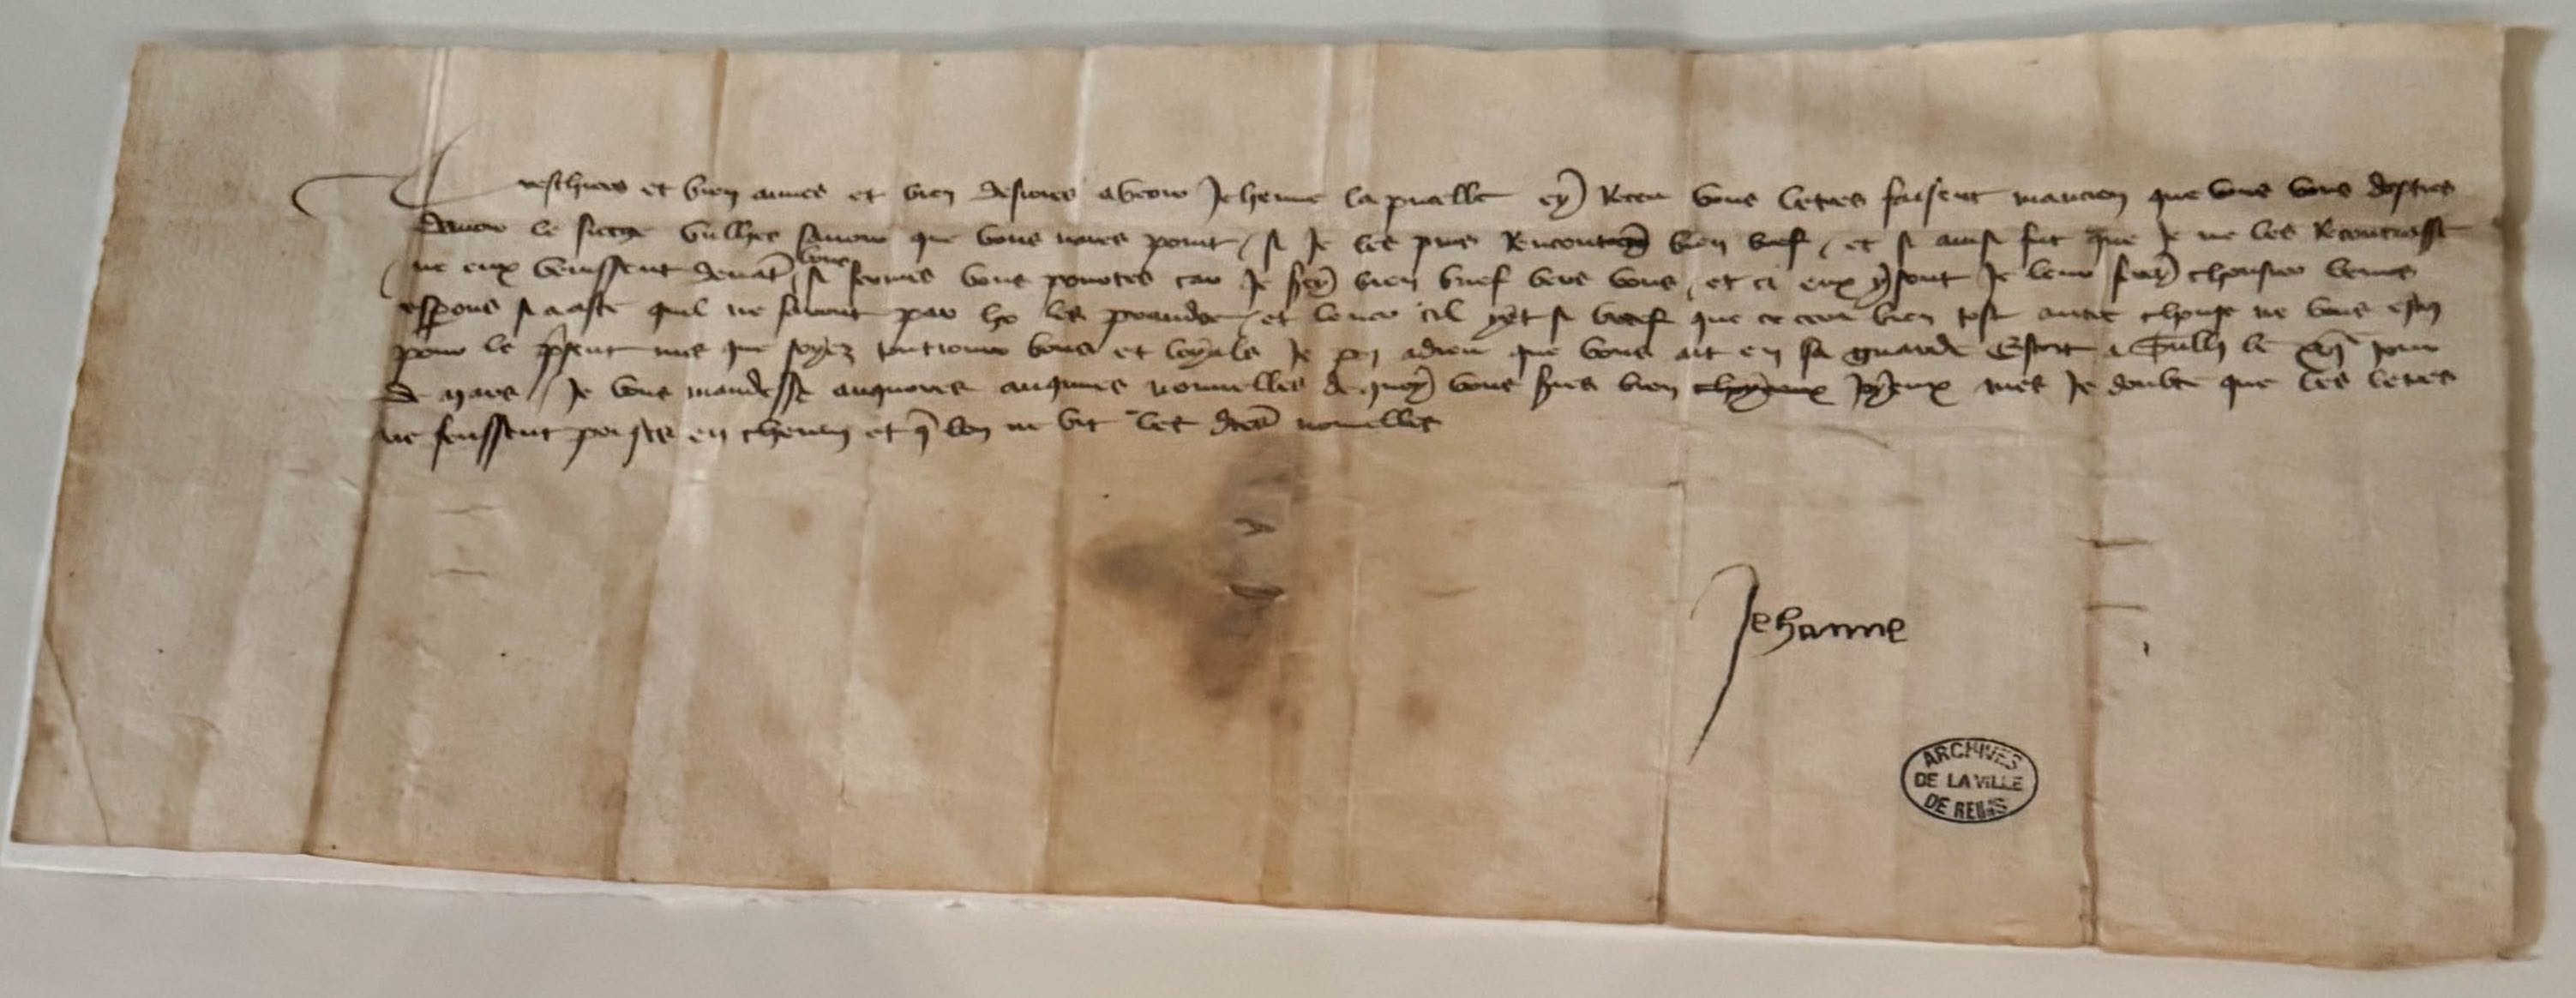 Lettre aux habitants de Reims (16 mars 1430), Jeanne d’Arc